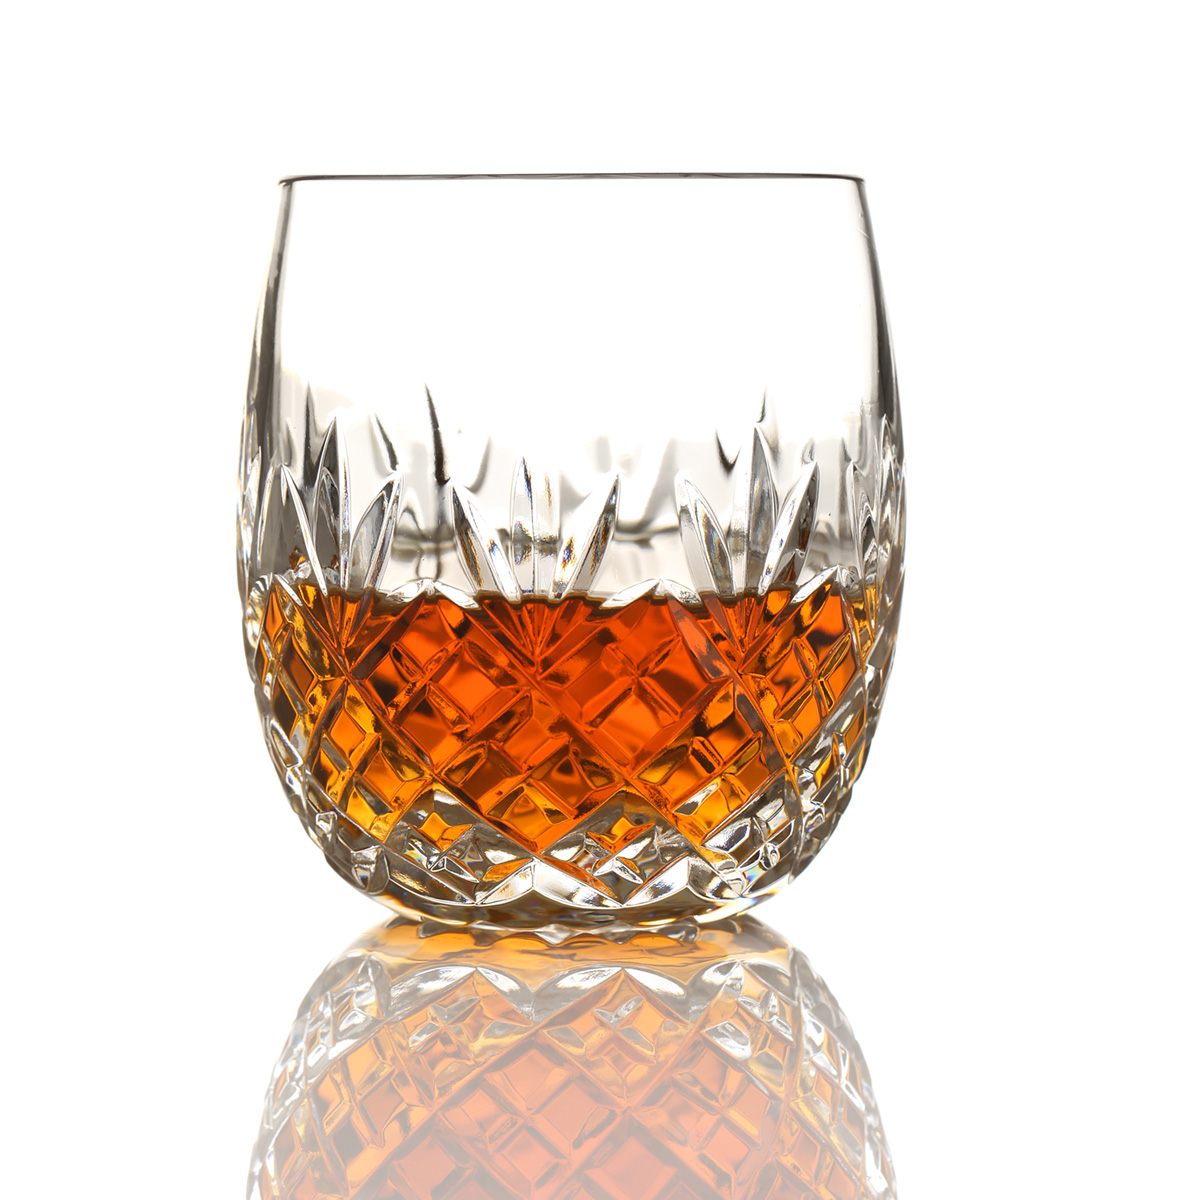 Edinburgh - Barrel Whisky Tumbler - Handgefertigt aus Kristallglas mit Diamantschliff